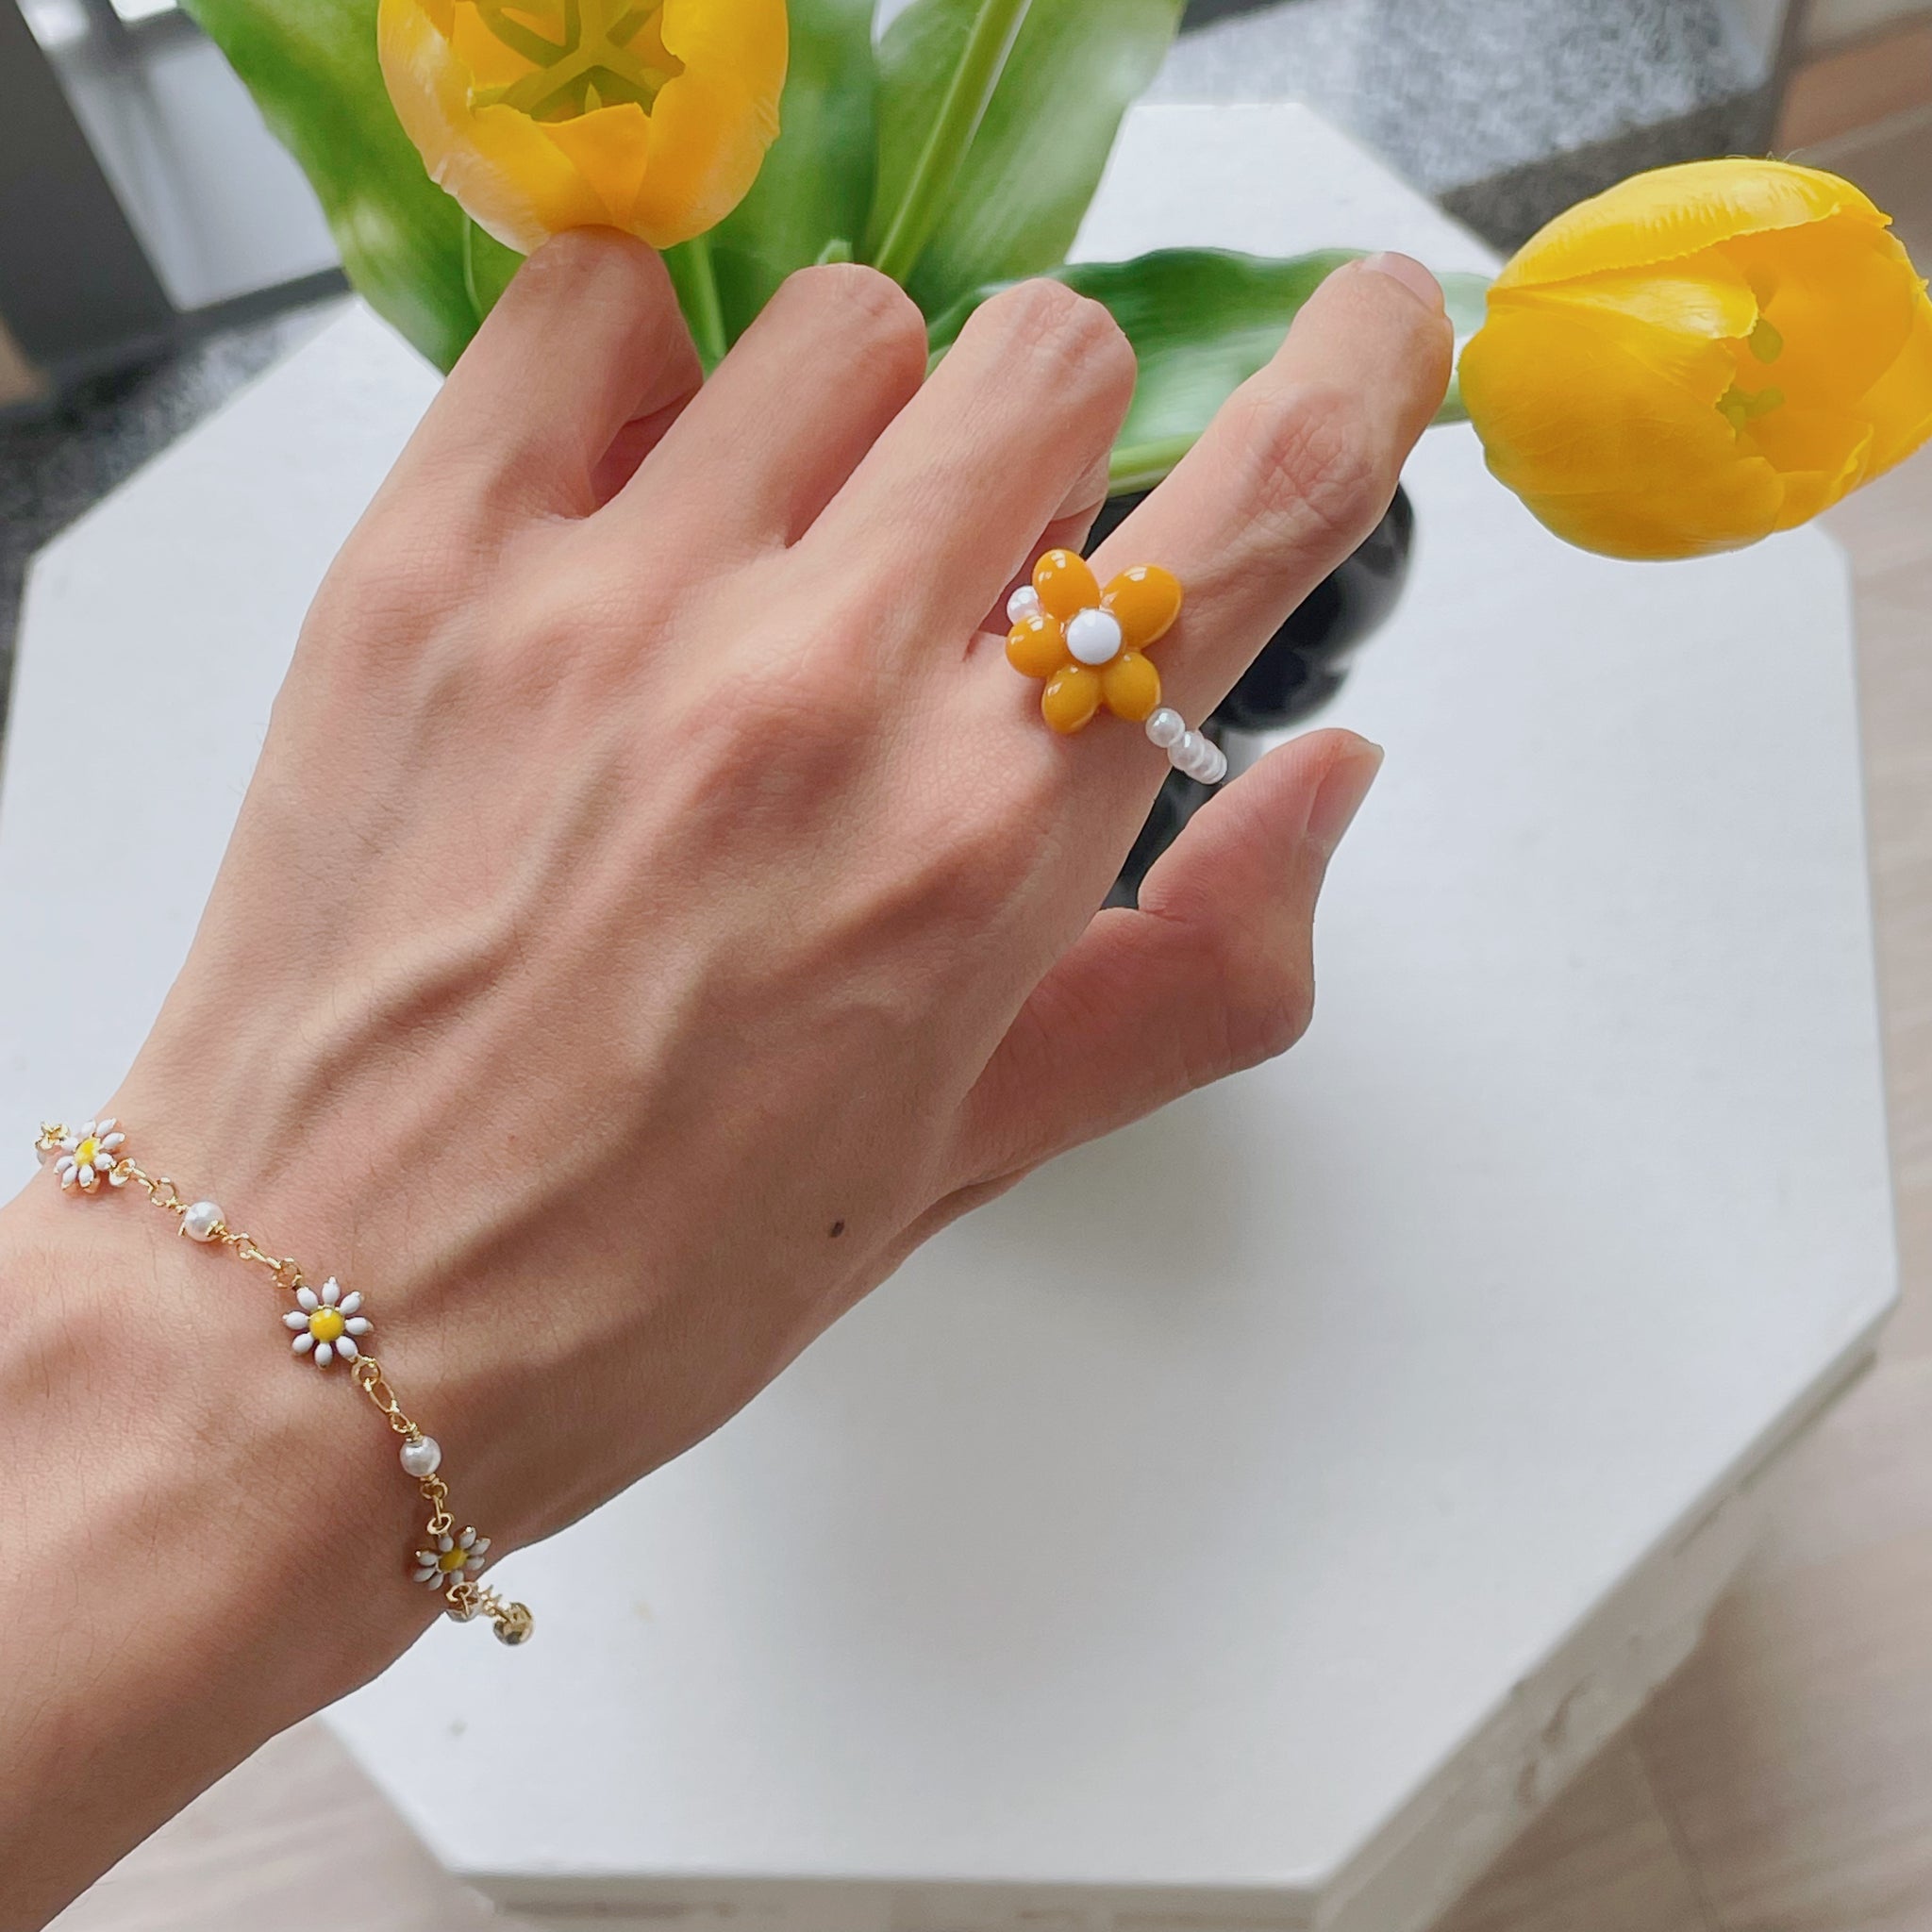 Flower Beads Ring